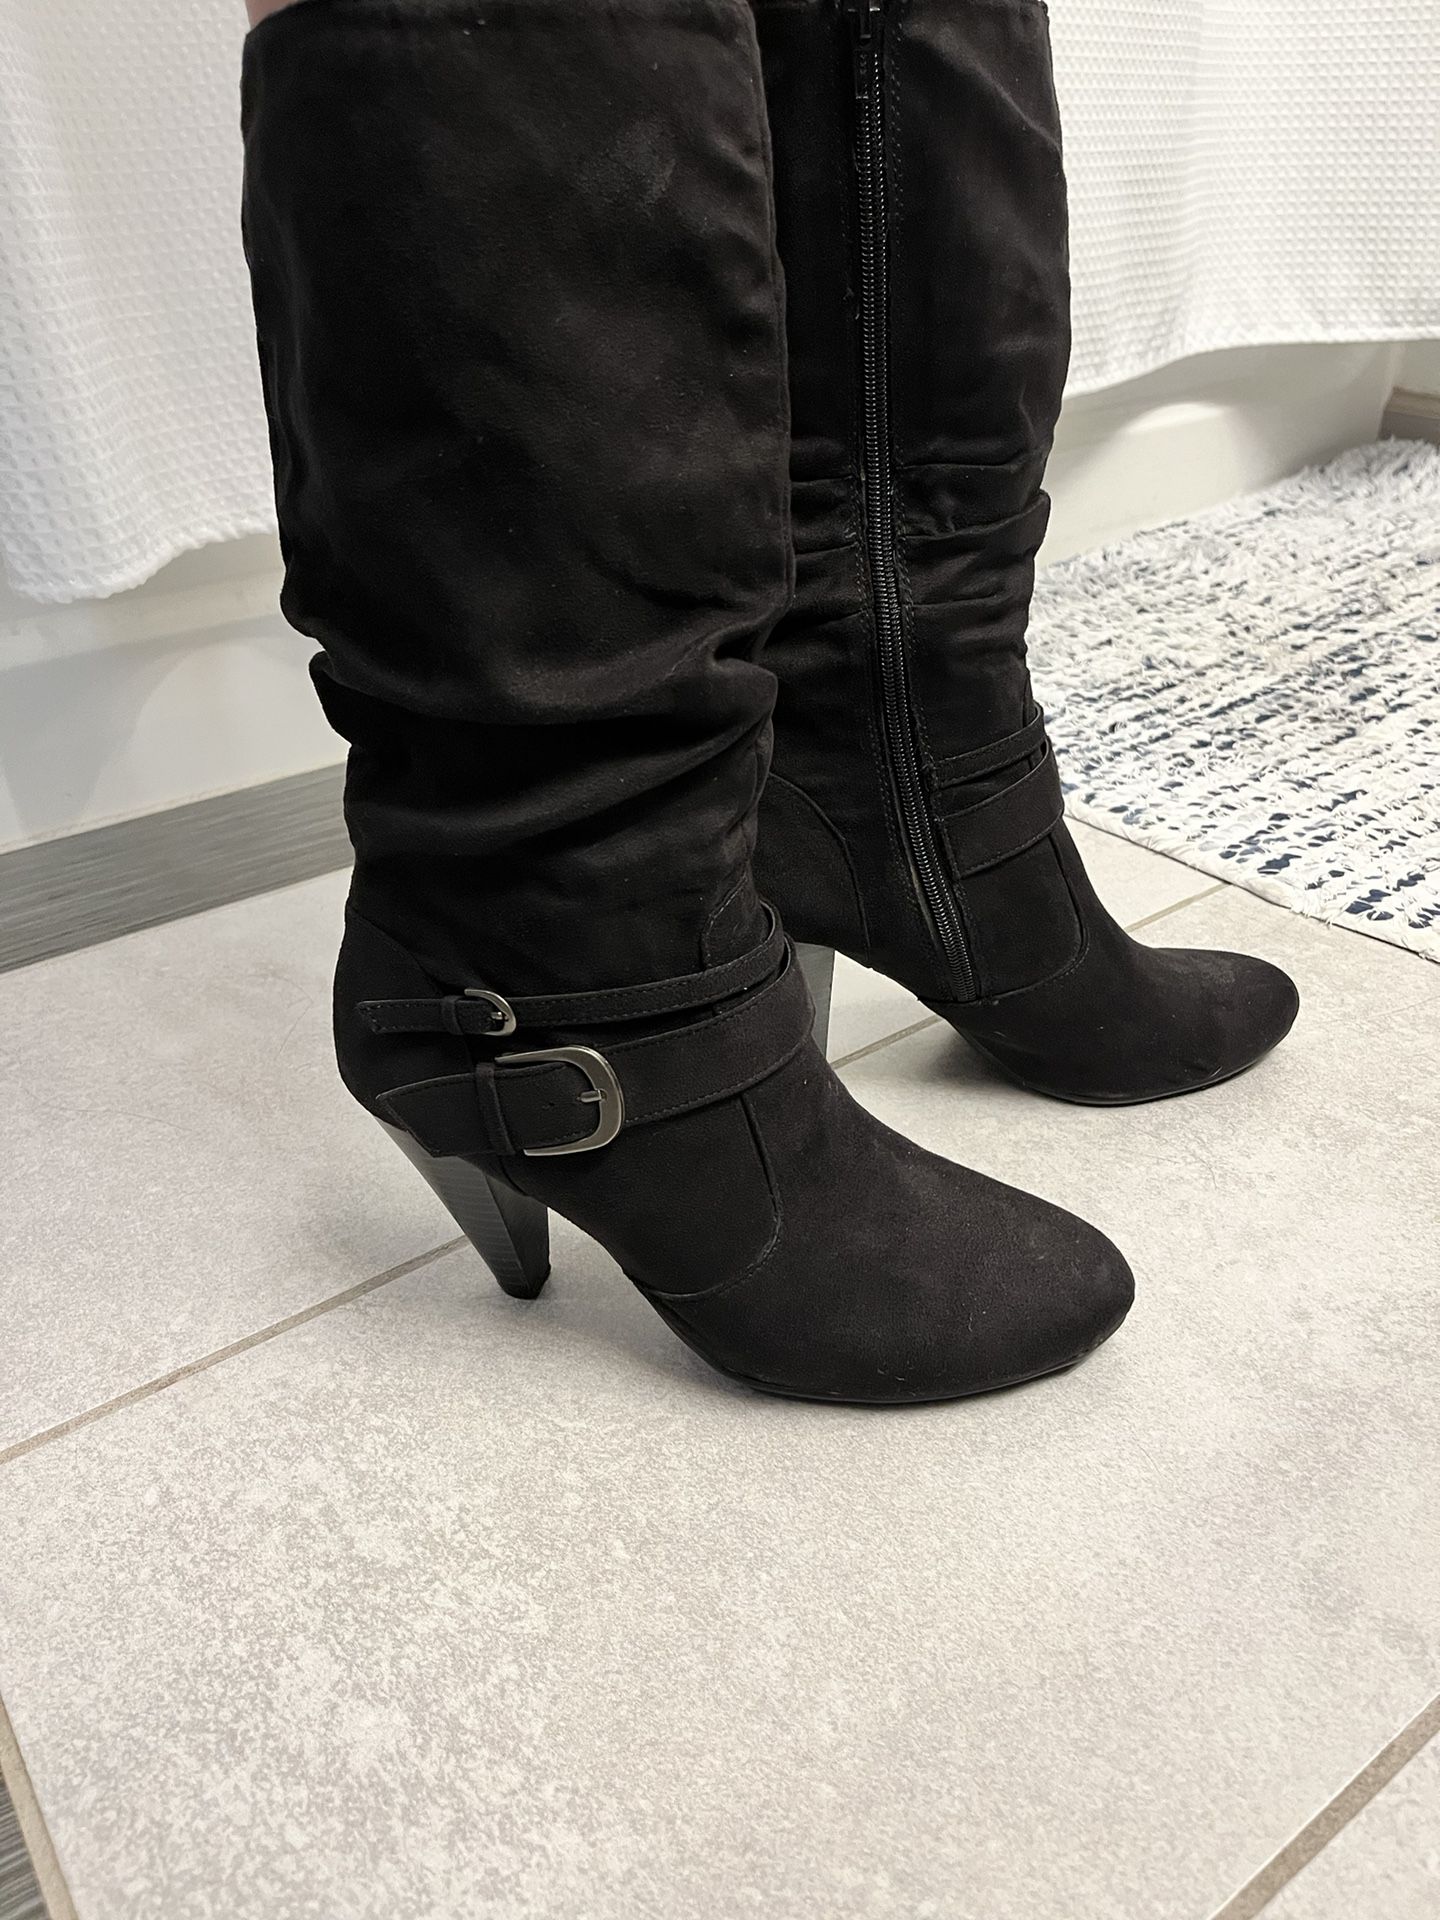 Apt 9 Black Heeled Boots 